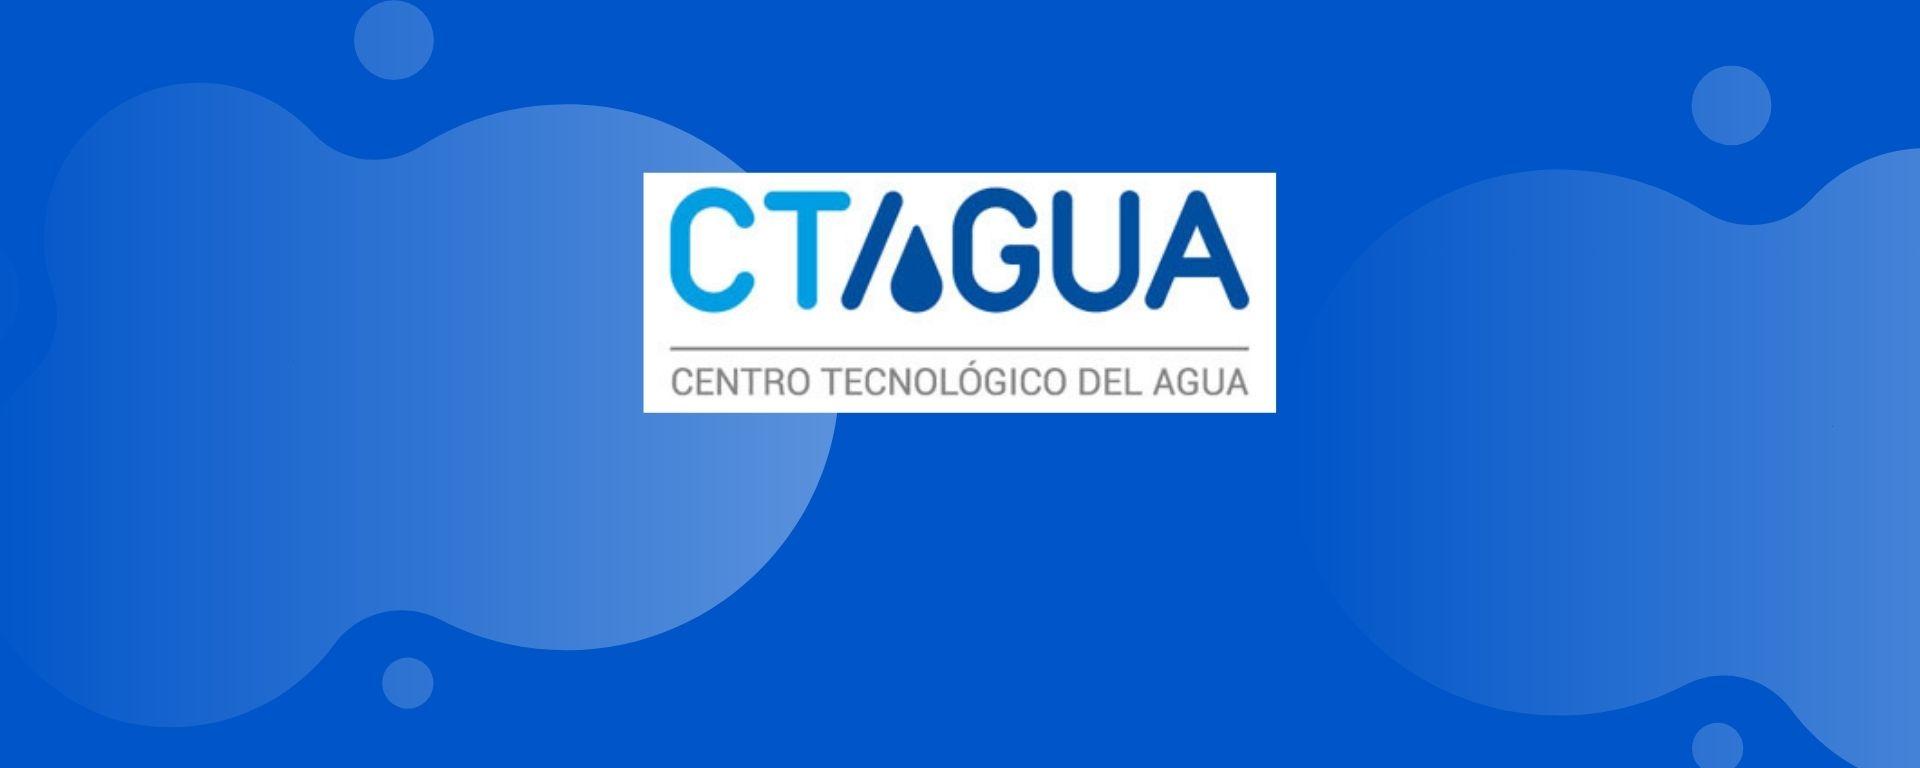 Centro de Producción más Limpia en webinar de CTAgua 